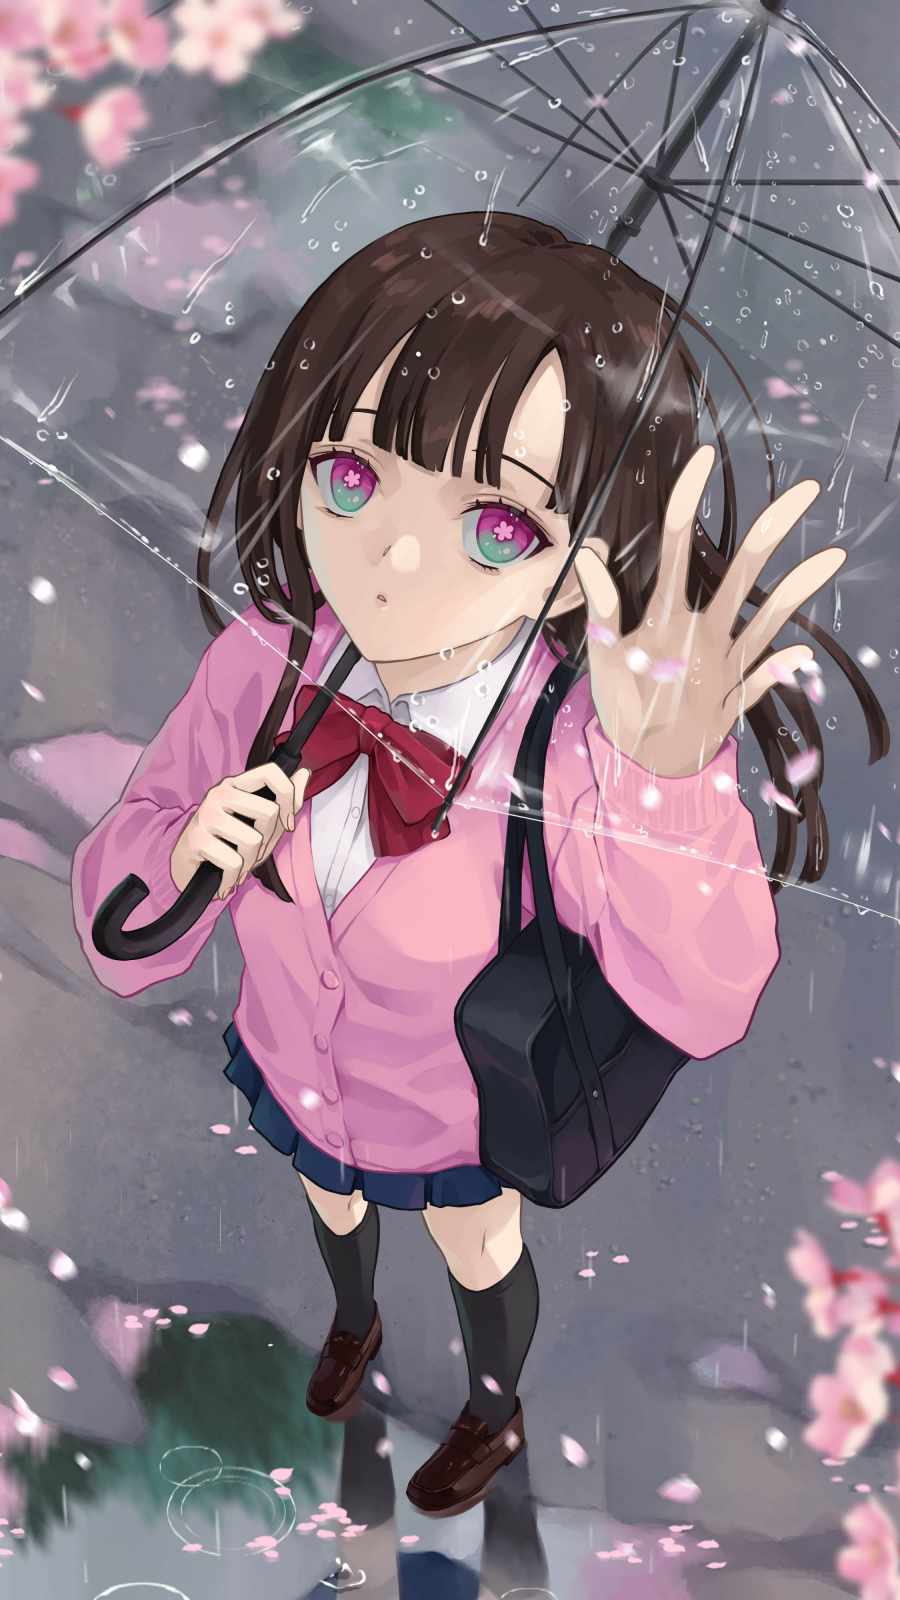 Anime Girl in Rain iPhone Wallpaper